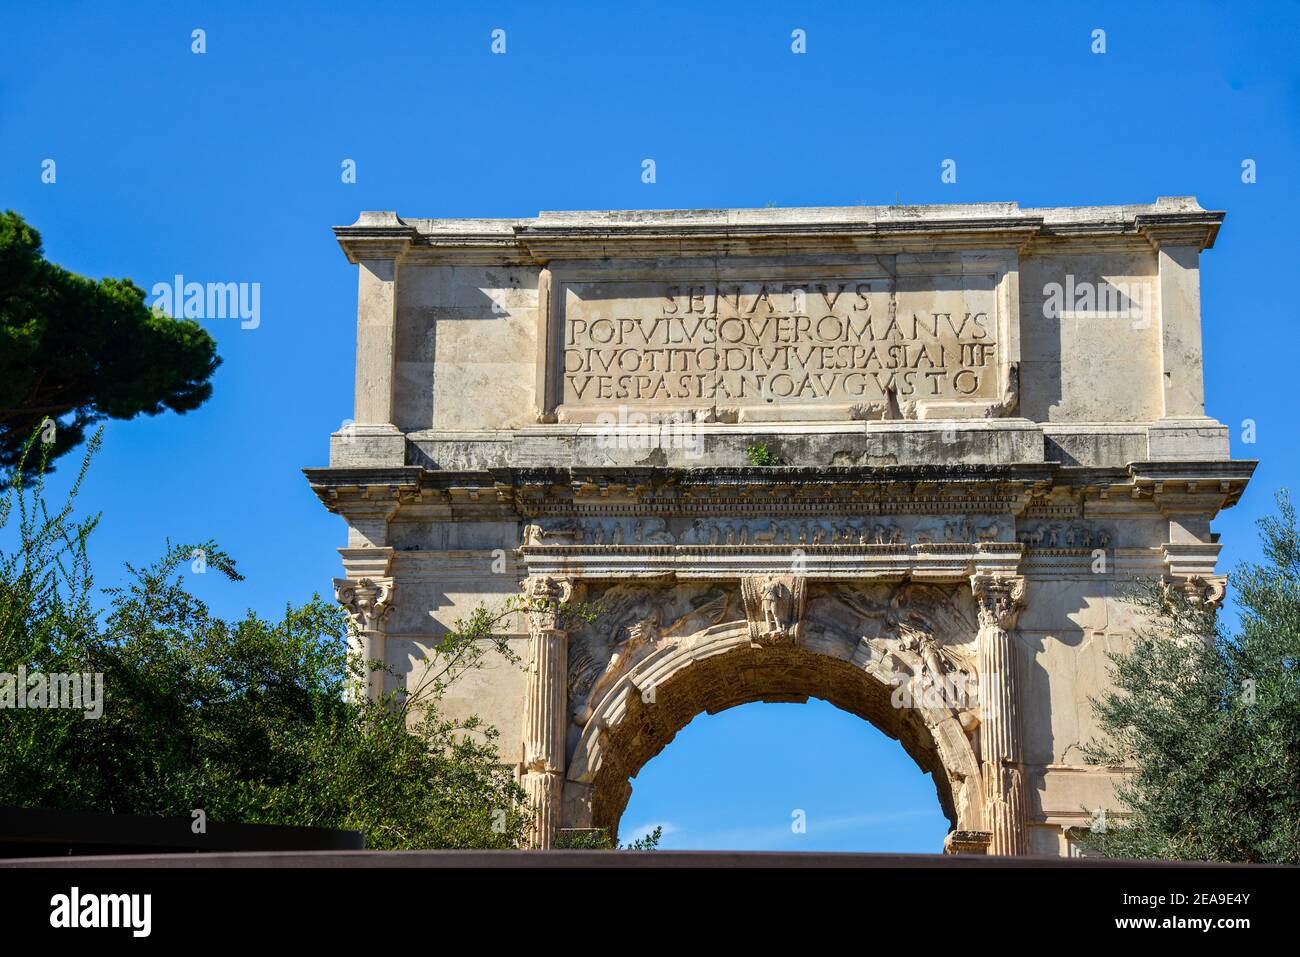 Arch of Constantino or Arco di Constantino in Rome, Italy Stock Photo